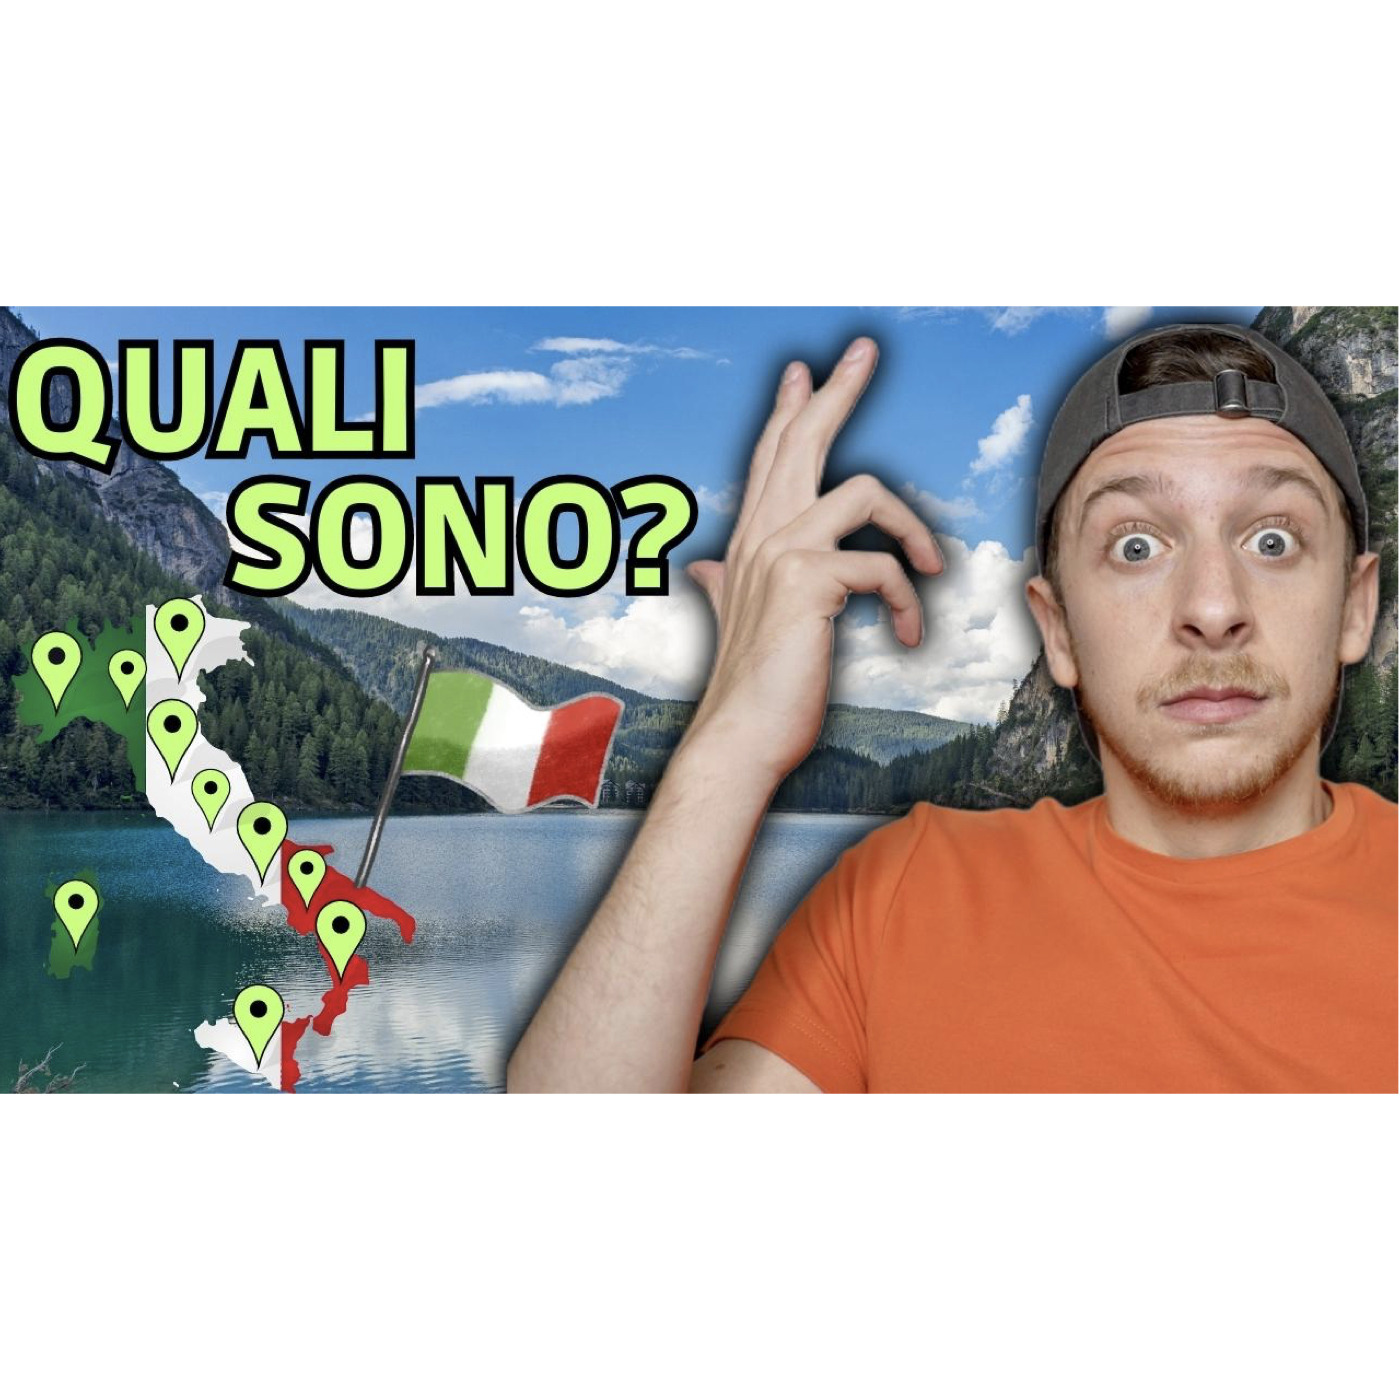 Episode 564: I 10 Laghi Più Belli D’Italia | Imparare l’Italiano